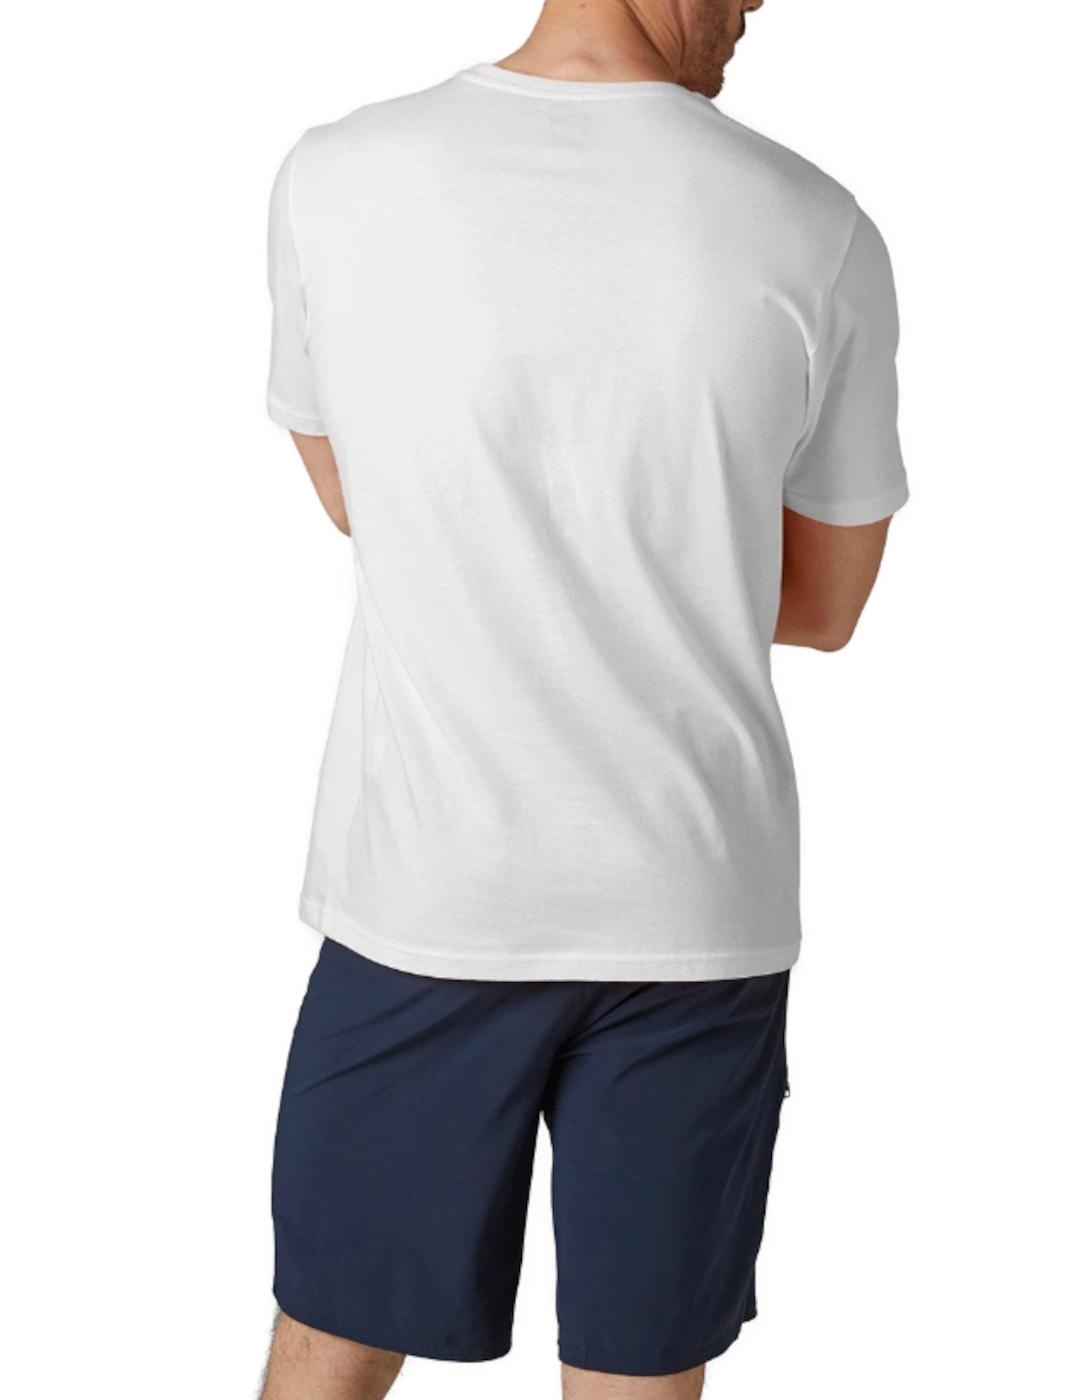 Camiseta Helly Hansen logo blanca para hombre-z